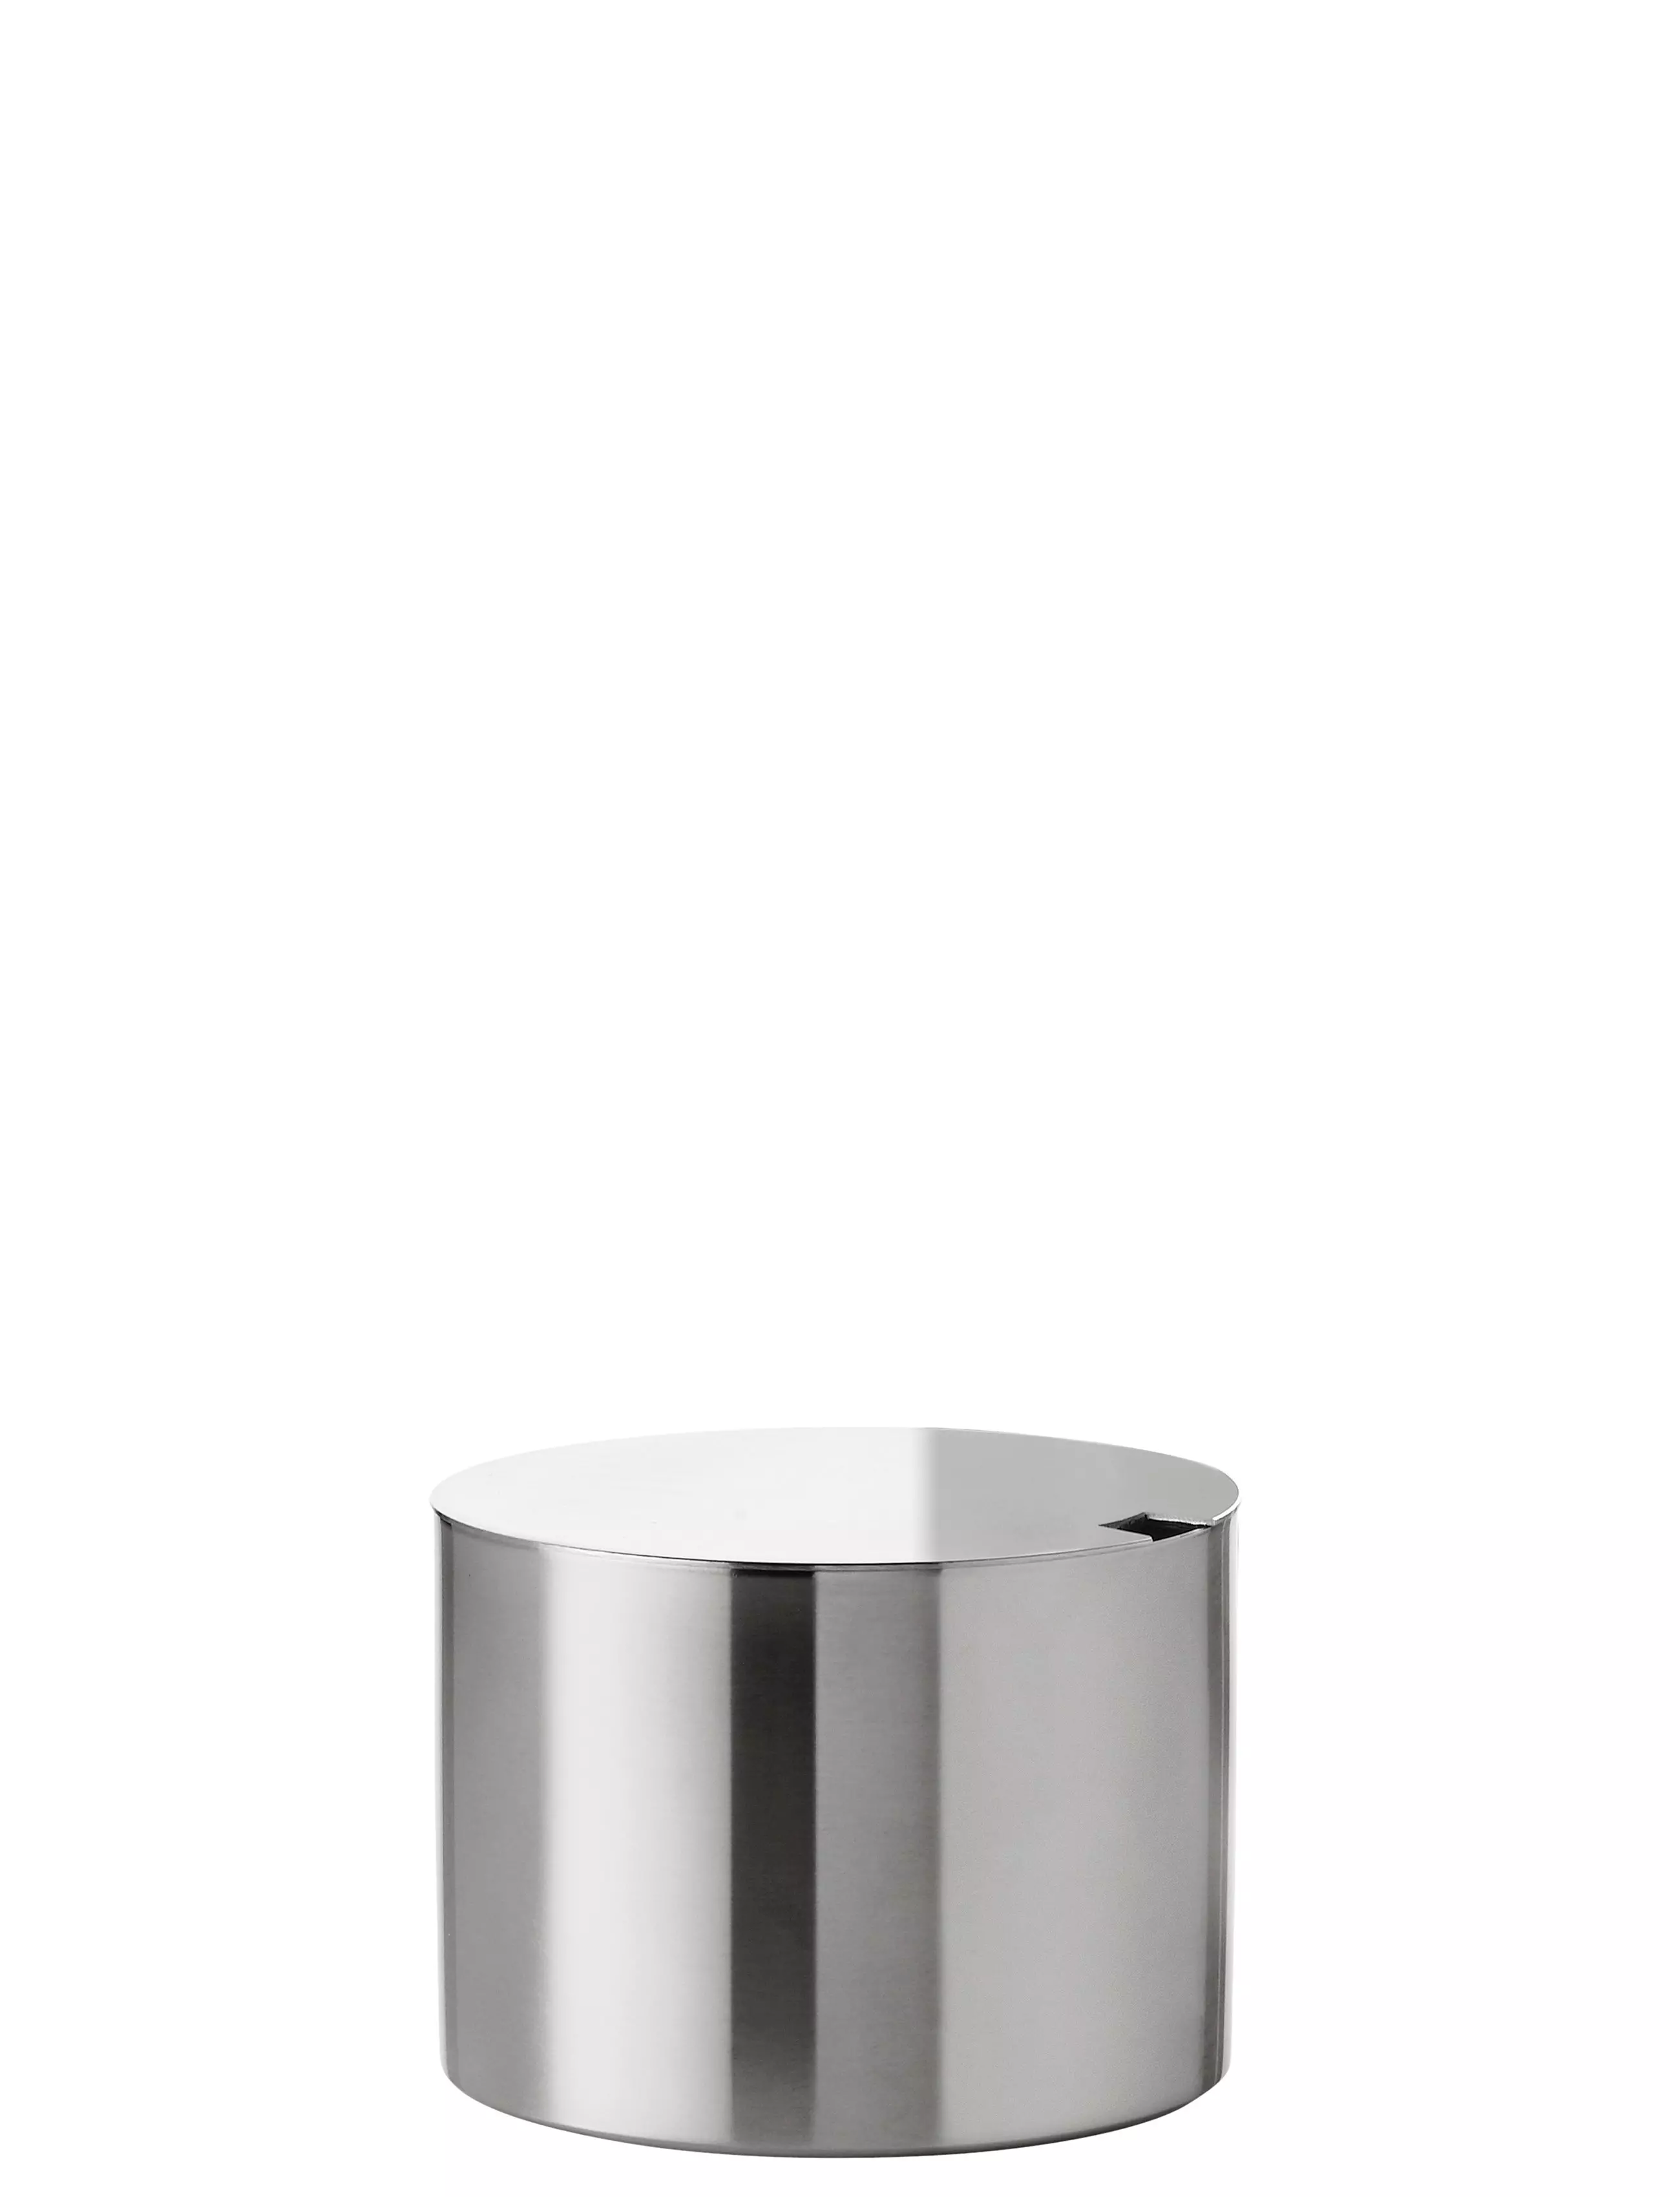 Stelton Arne Jacobsen Cylinda Sugar Bowl